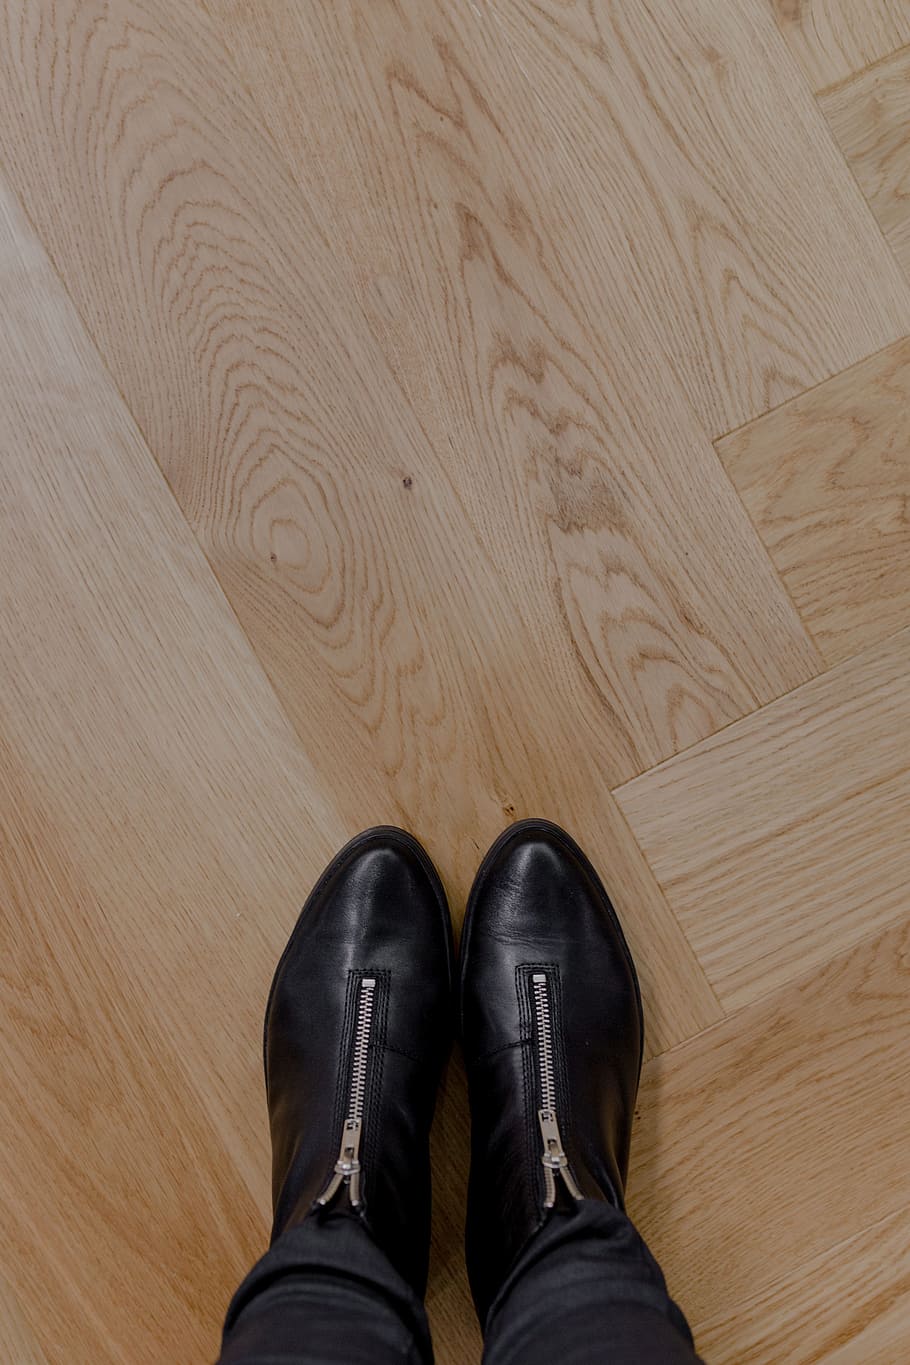 Beautiful oak floor, oak parquet, low section, shoe, human leg